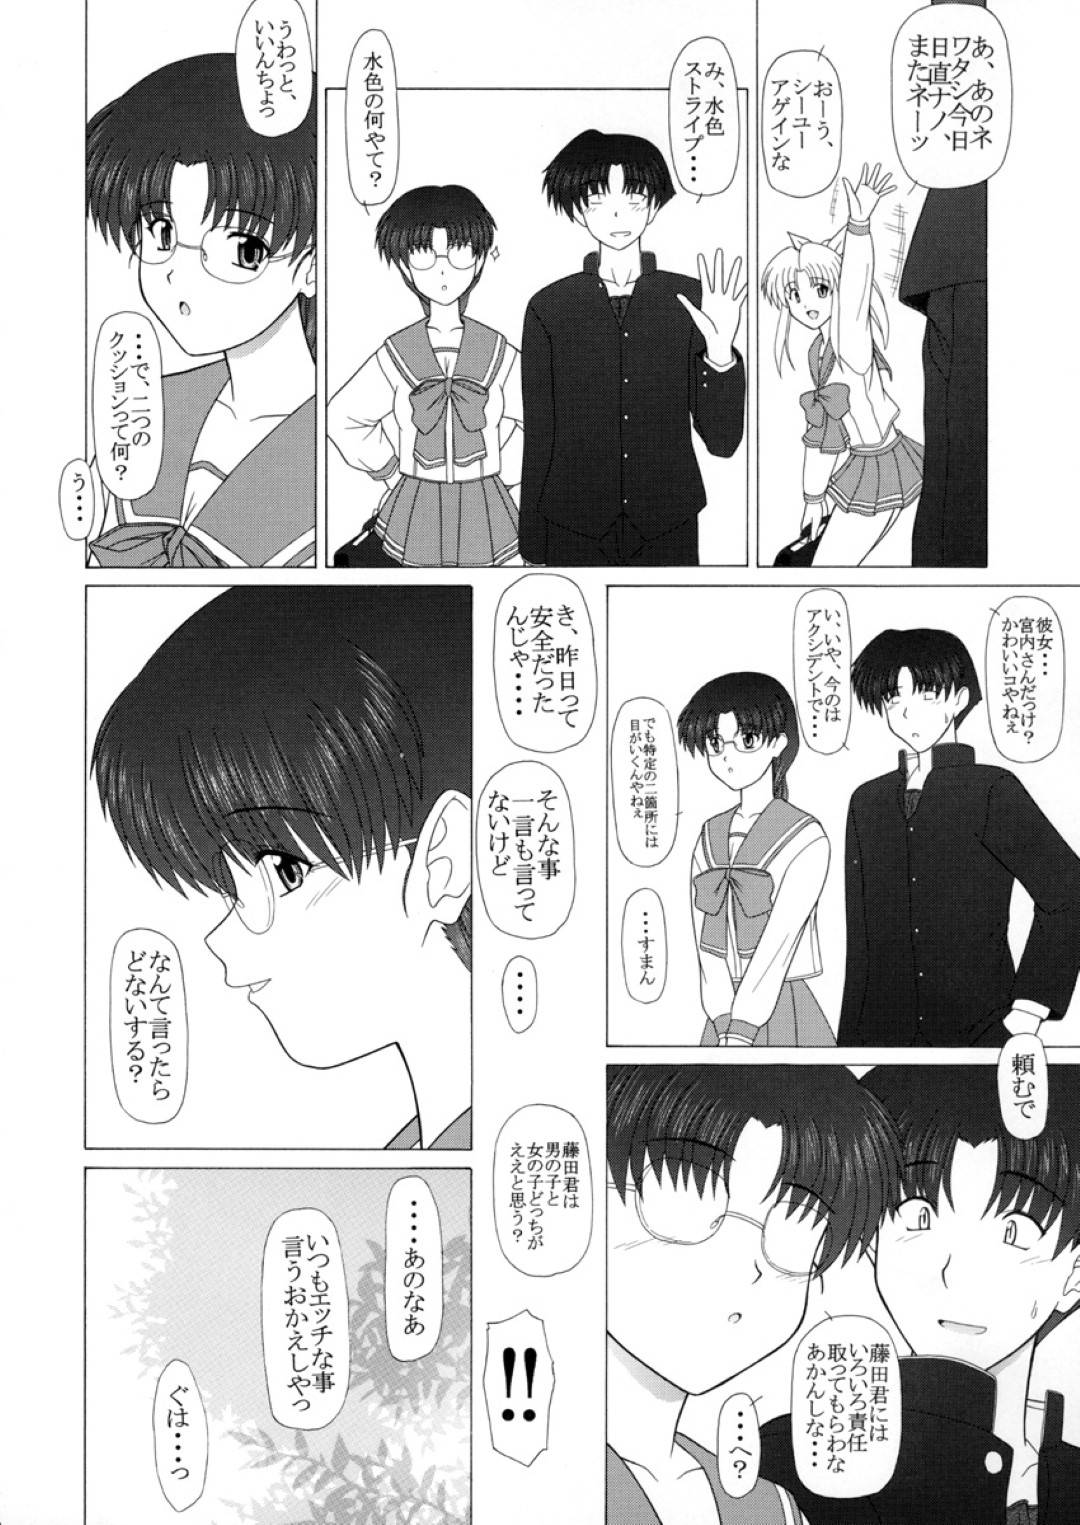 【エロ漫画】テスト終わりに藤田とデートをする智子は家に行きたいと伝えるとイチャラブセックス【Pin Vice】